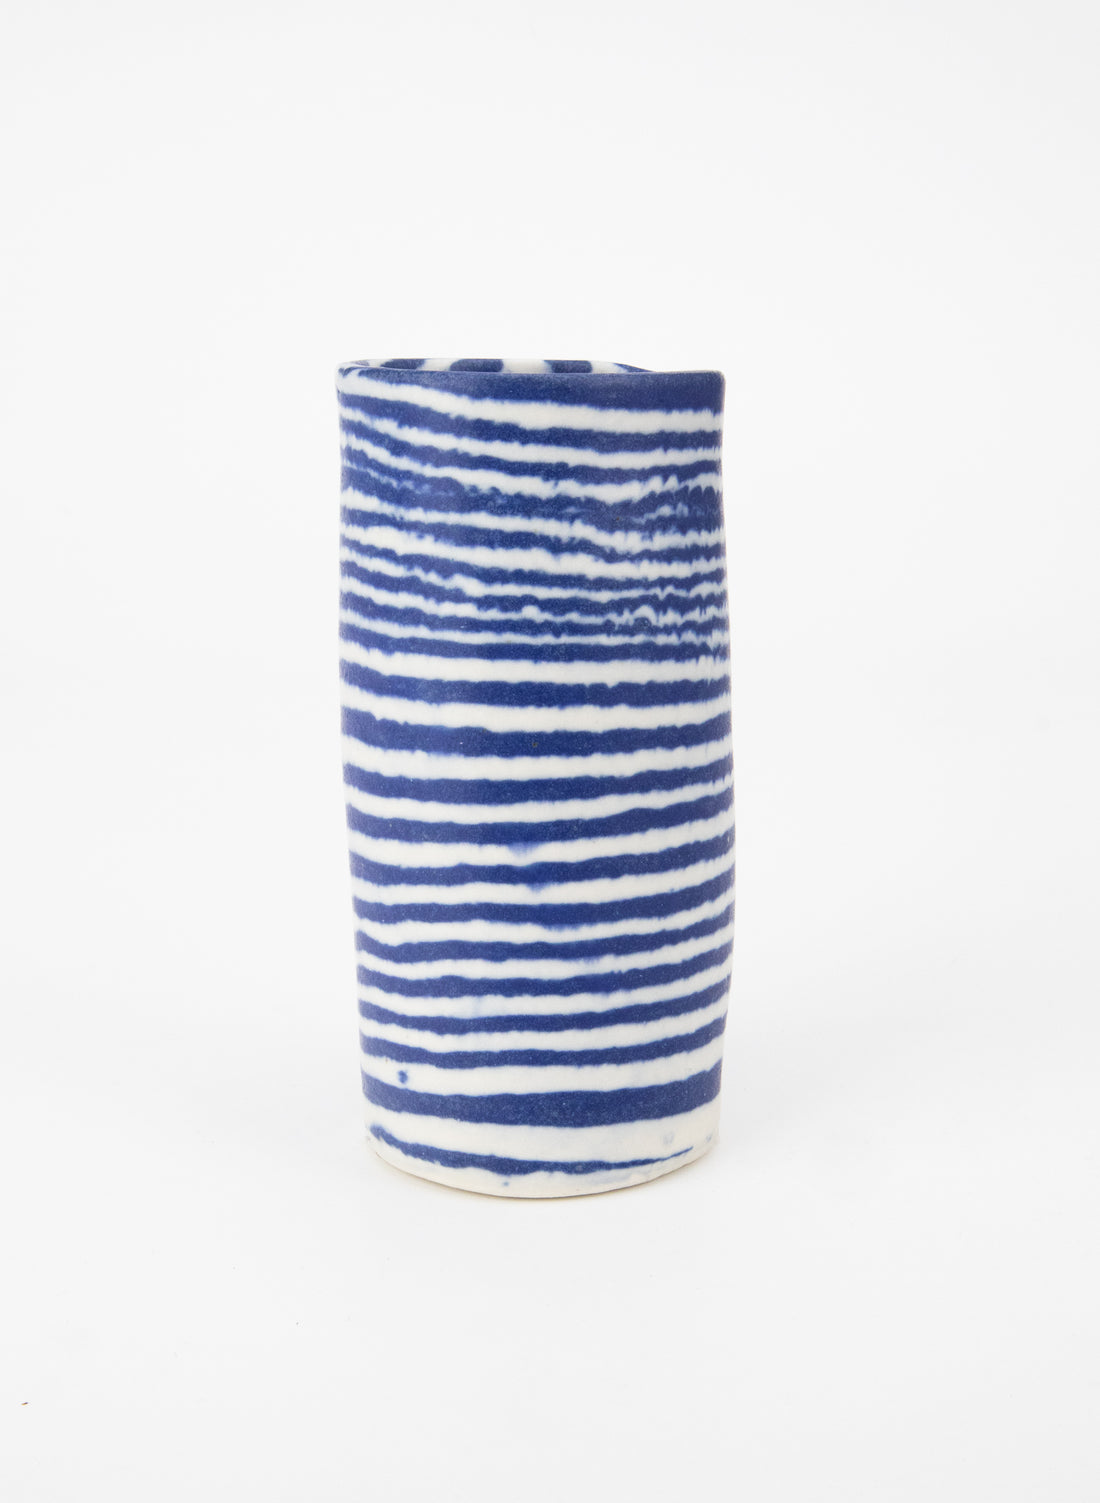 Nerikomi Blue Tiny Vase